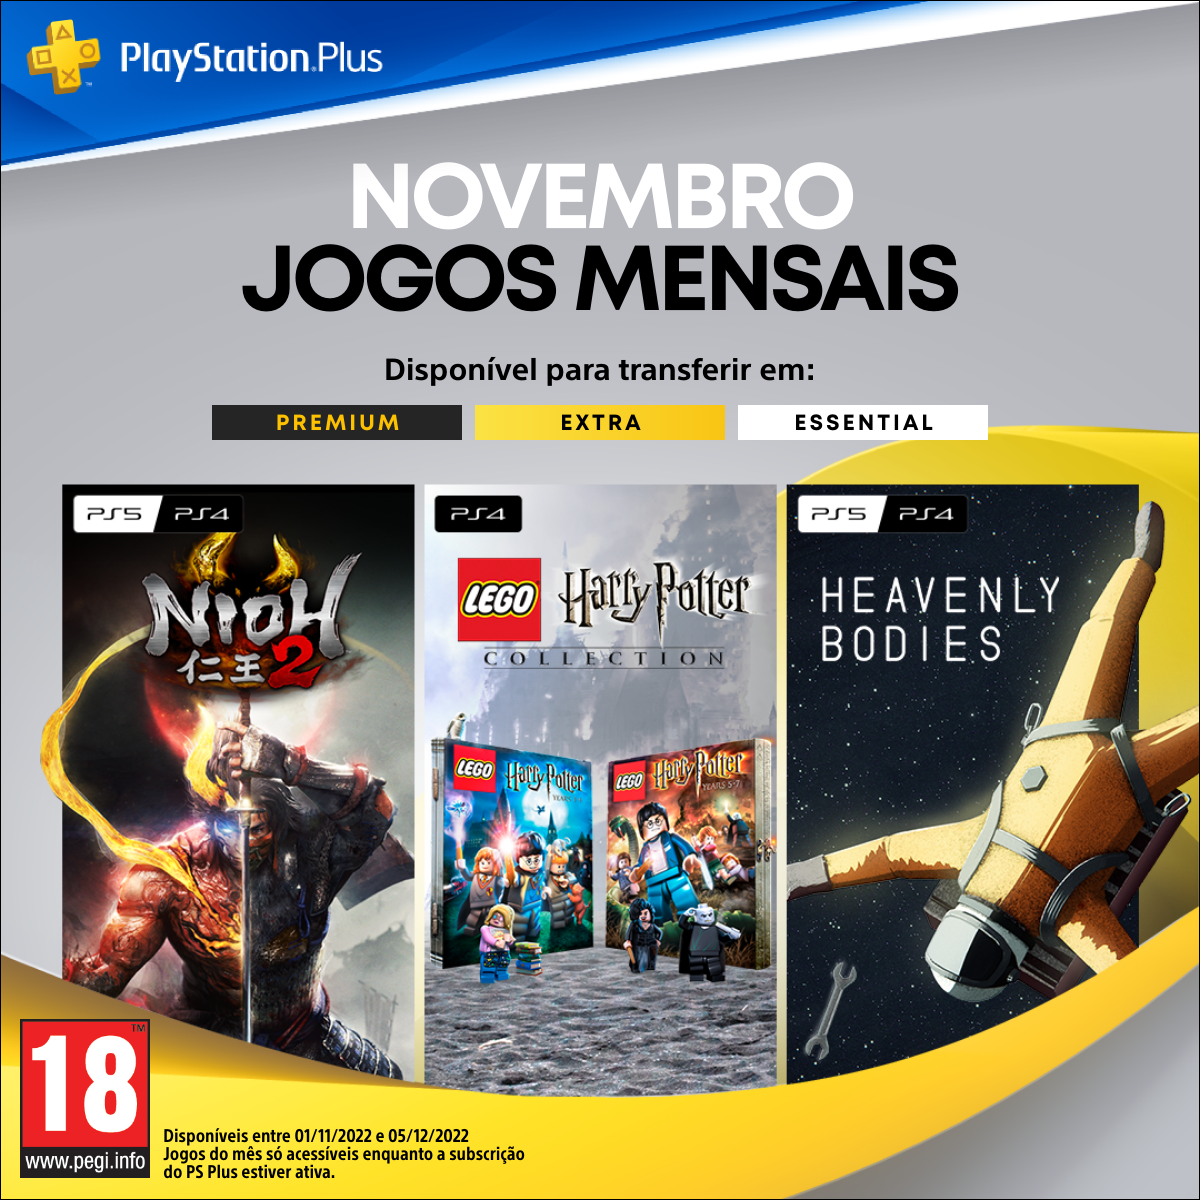 Jogos mensais de dezembro para membros PlayStation Plus: Lego 2K